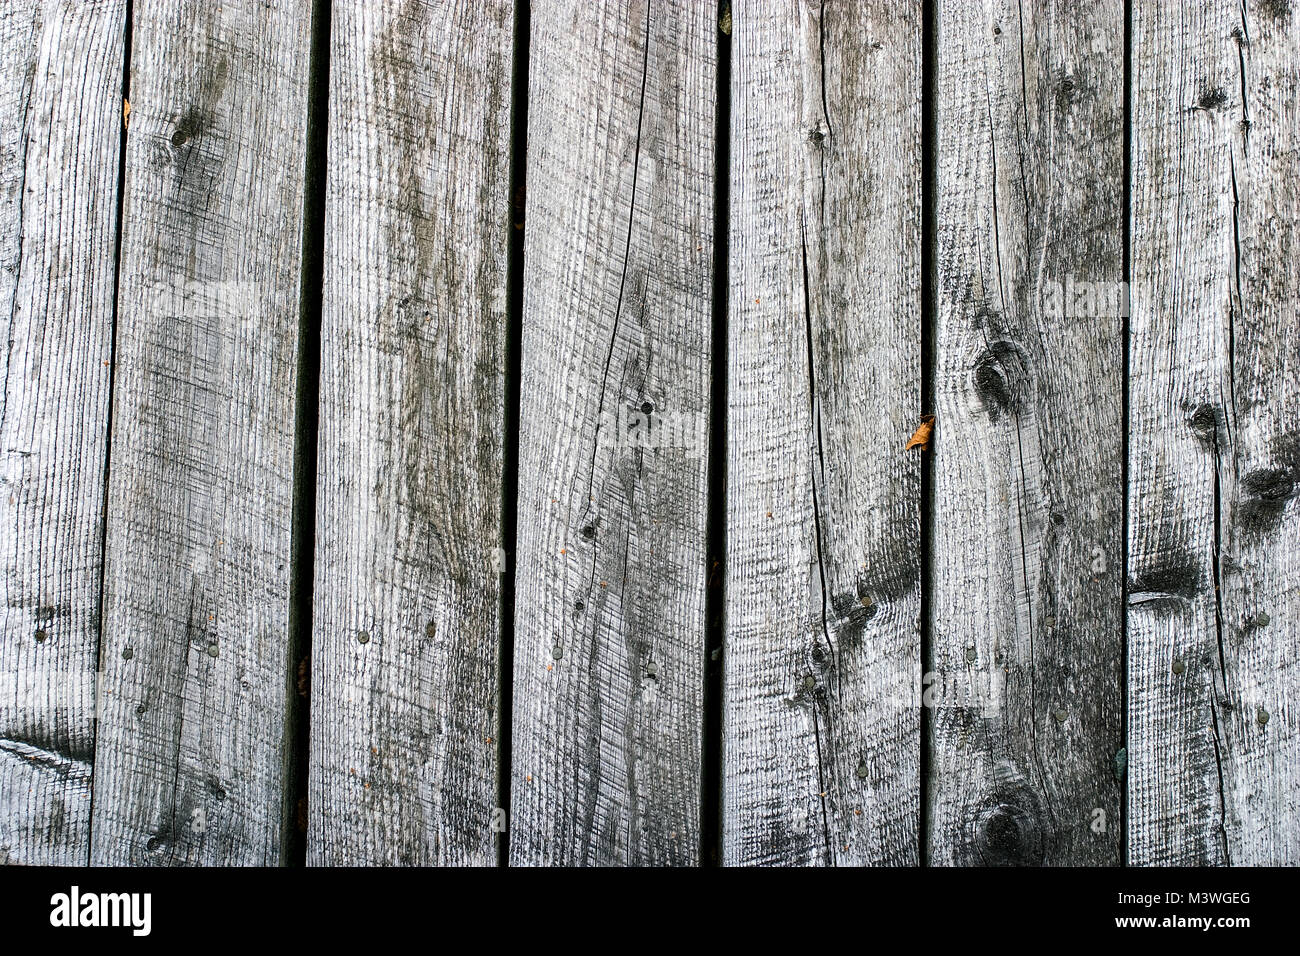 Hintergrund einer Holzwand mit vertikalen grauen Platten mit Kreissäge Markierungen. Stockfoto